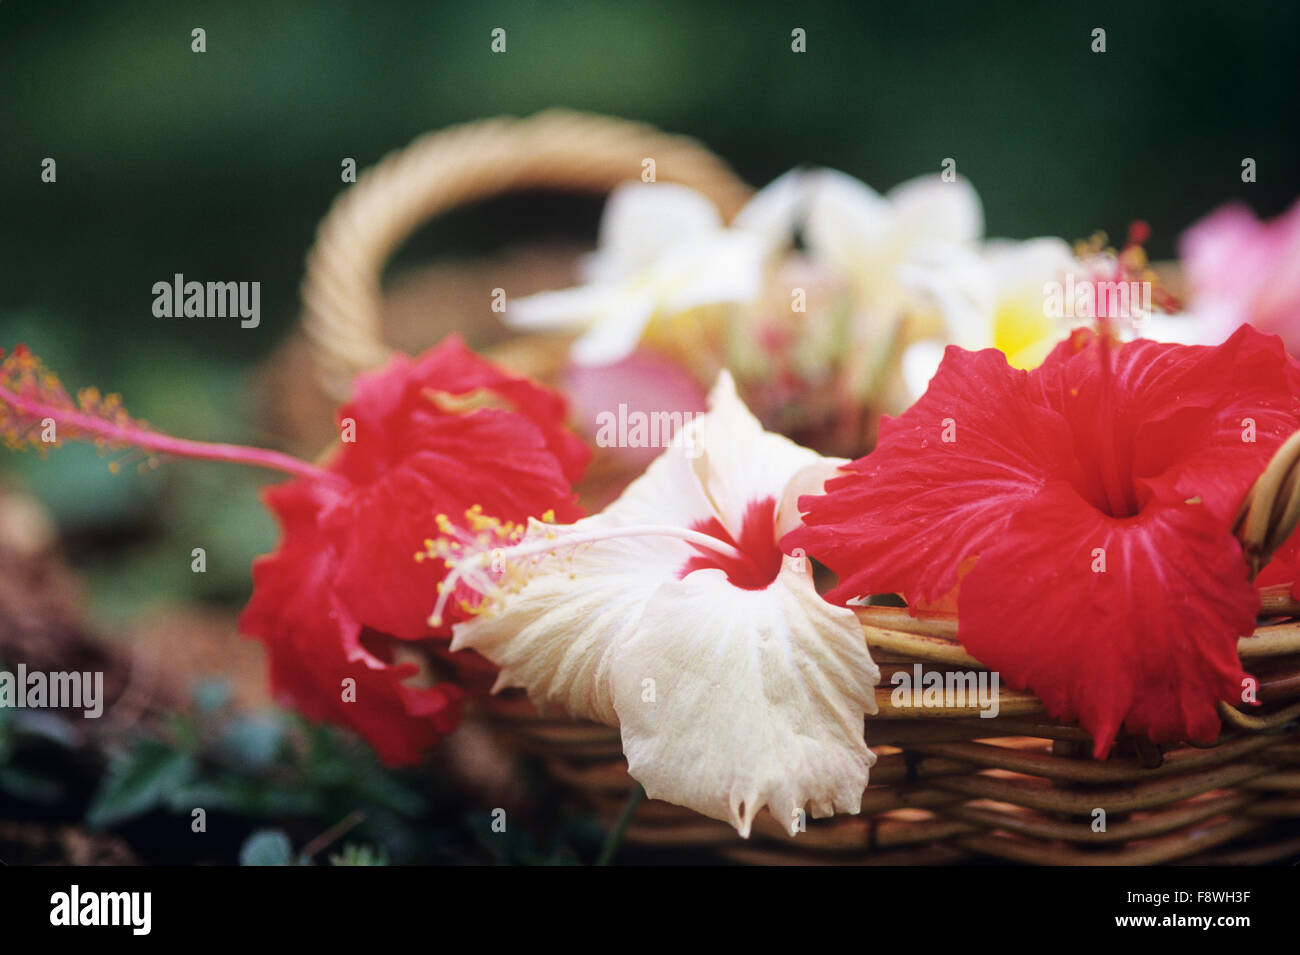 Fidschi-Inseln, Botanischer, Hibiskusblüte, Nahaufnahme von frisch gepflückten Hibiskus in Korb. Stockfoto